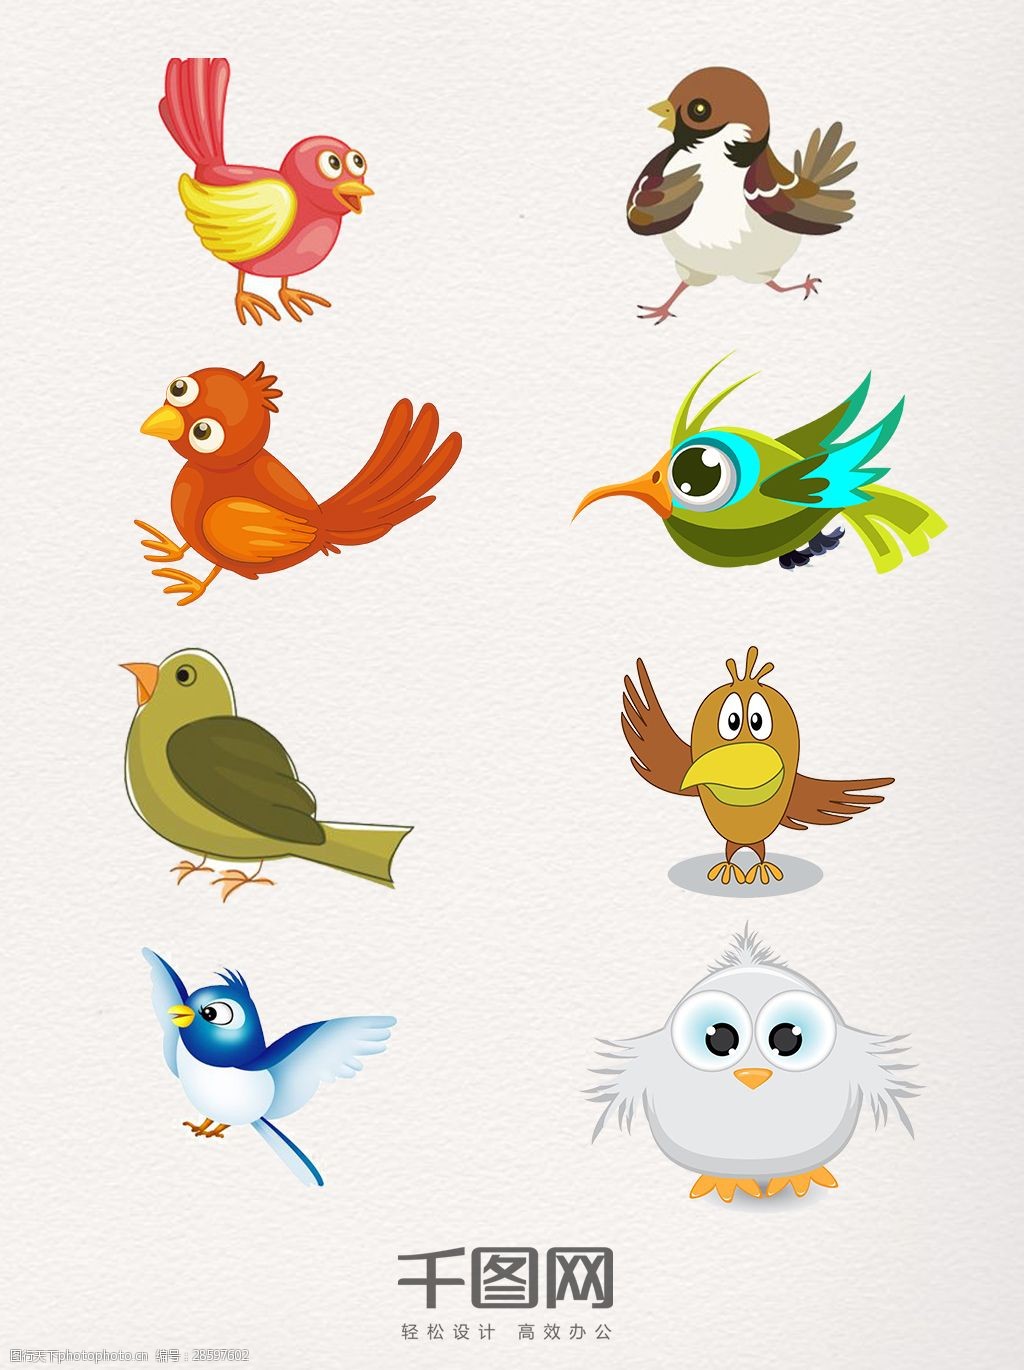 关键词:一组形态各异的卡通麻雀图 麻雀 动物 鸟类 卡通图案 形象设计